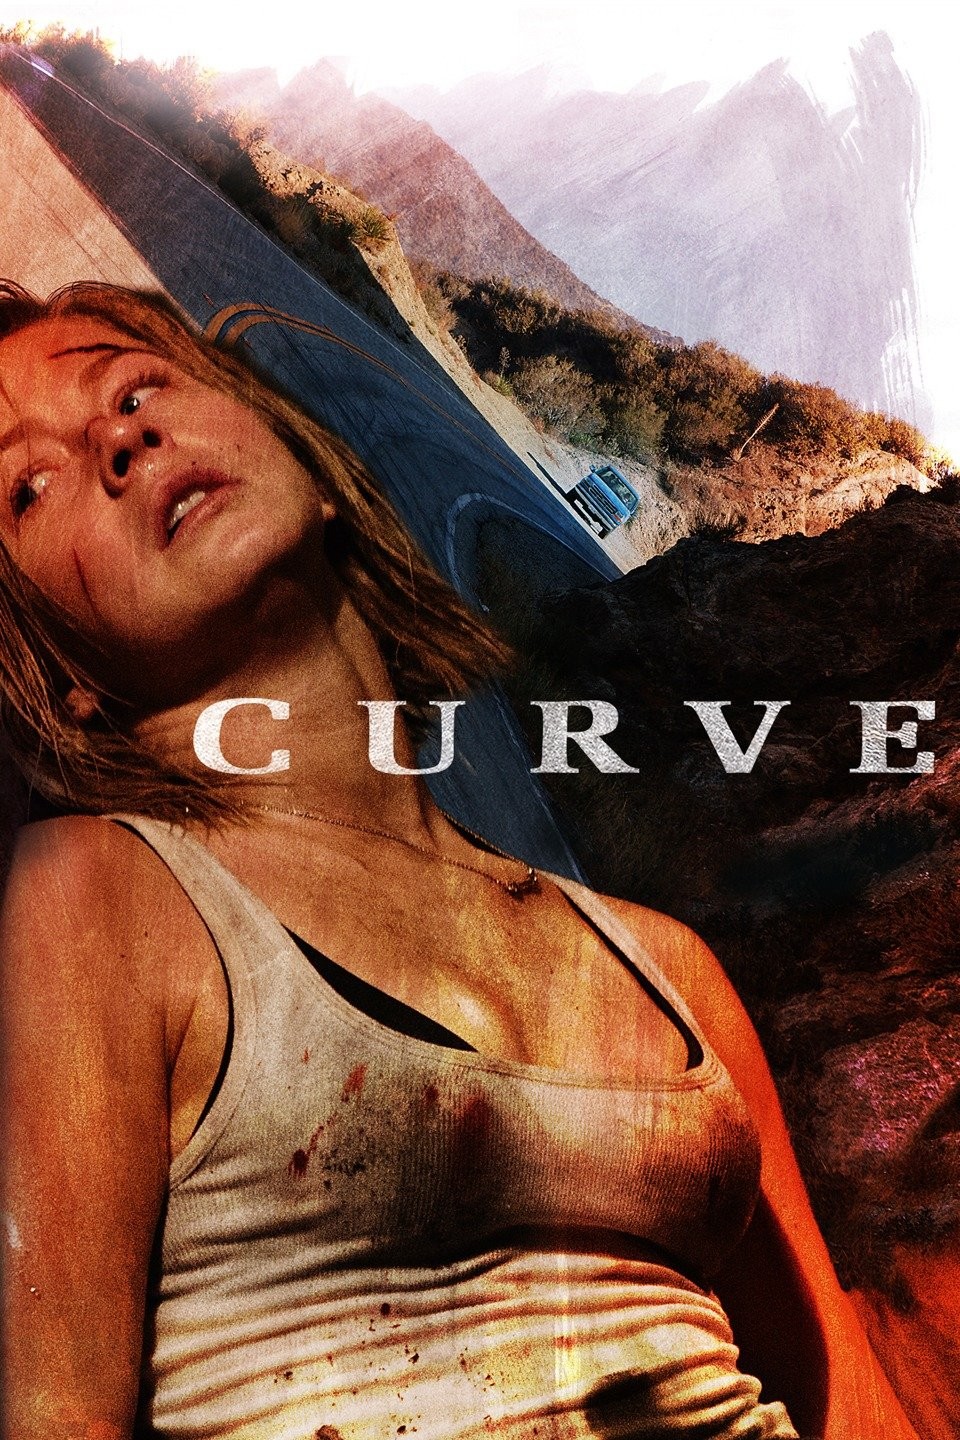 REVIEW - 'Curve' (2016)